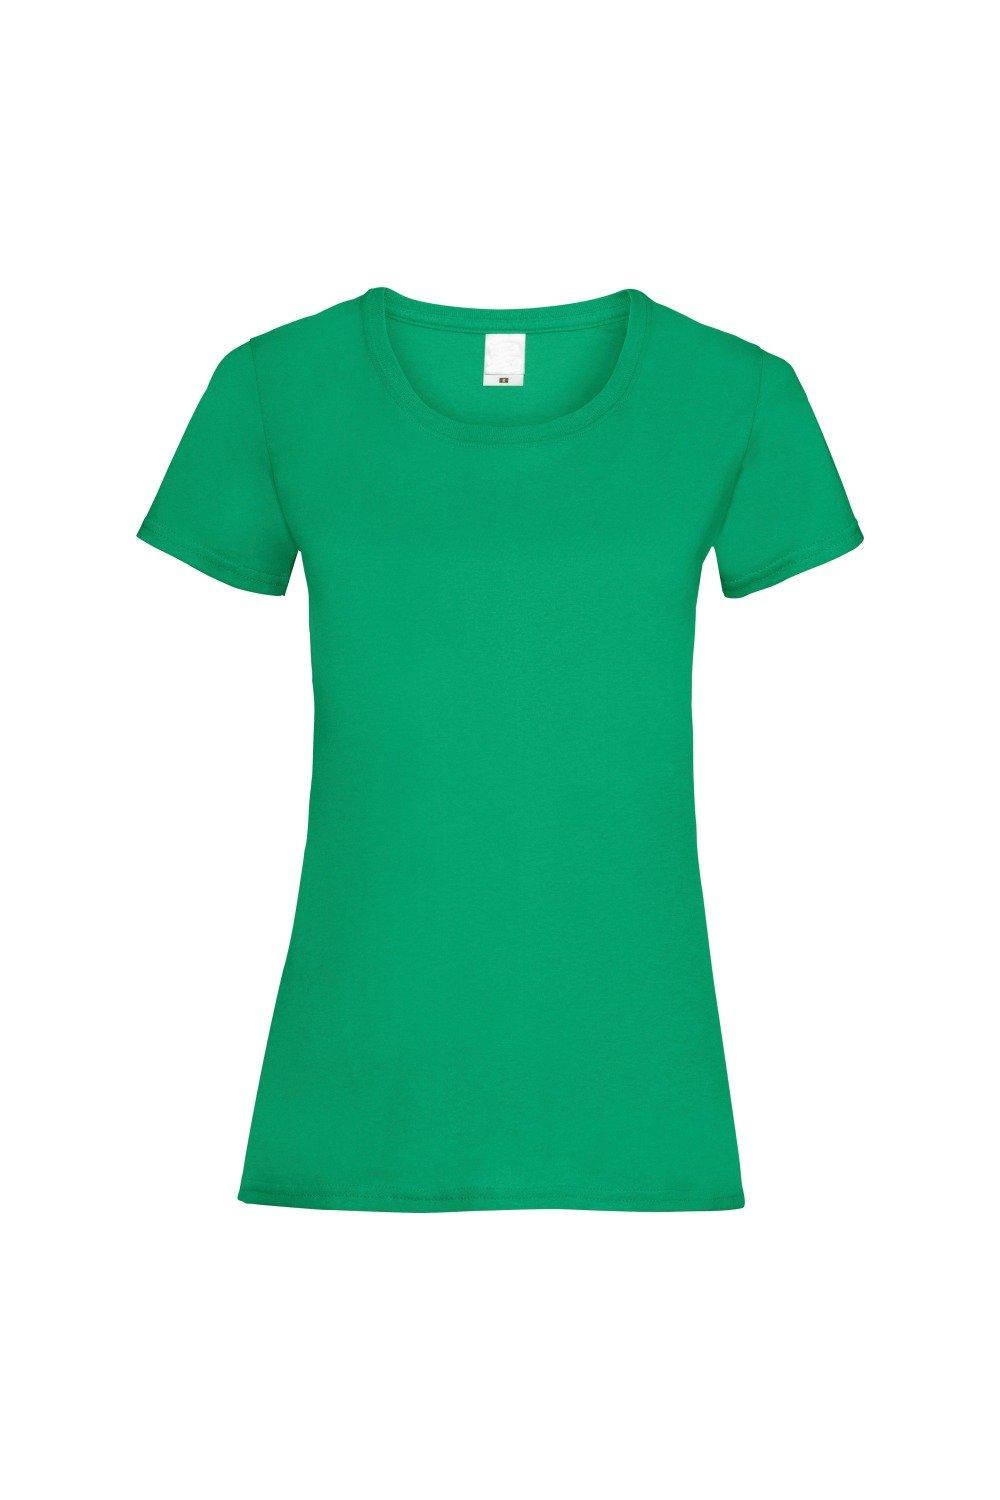 Повседневная футболка с короткими рукавами Value Universal Textiles, зеленый мужская футболка игуана с коктейлем s серый меланж